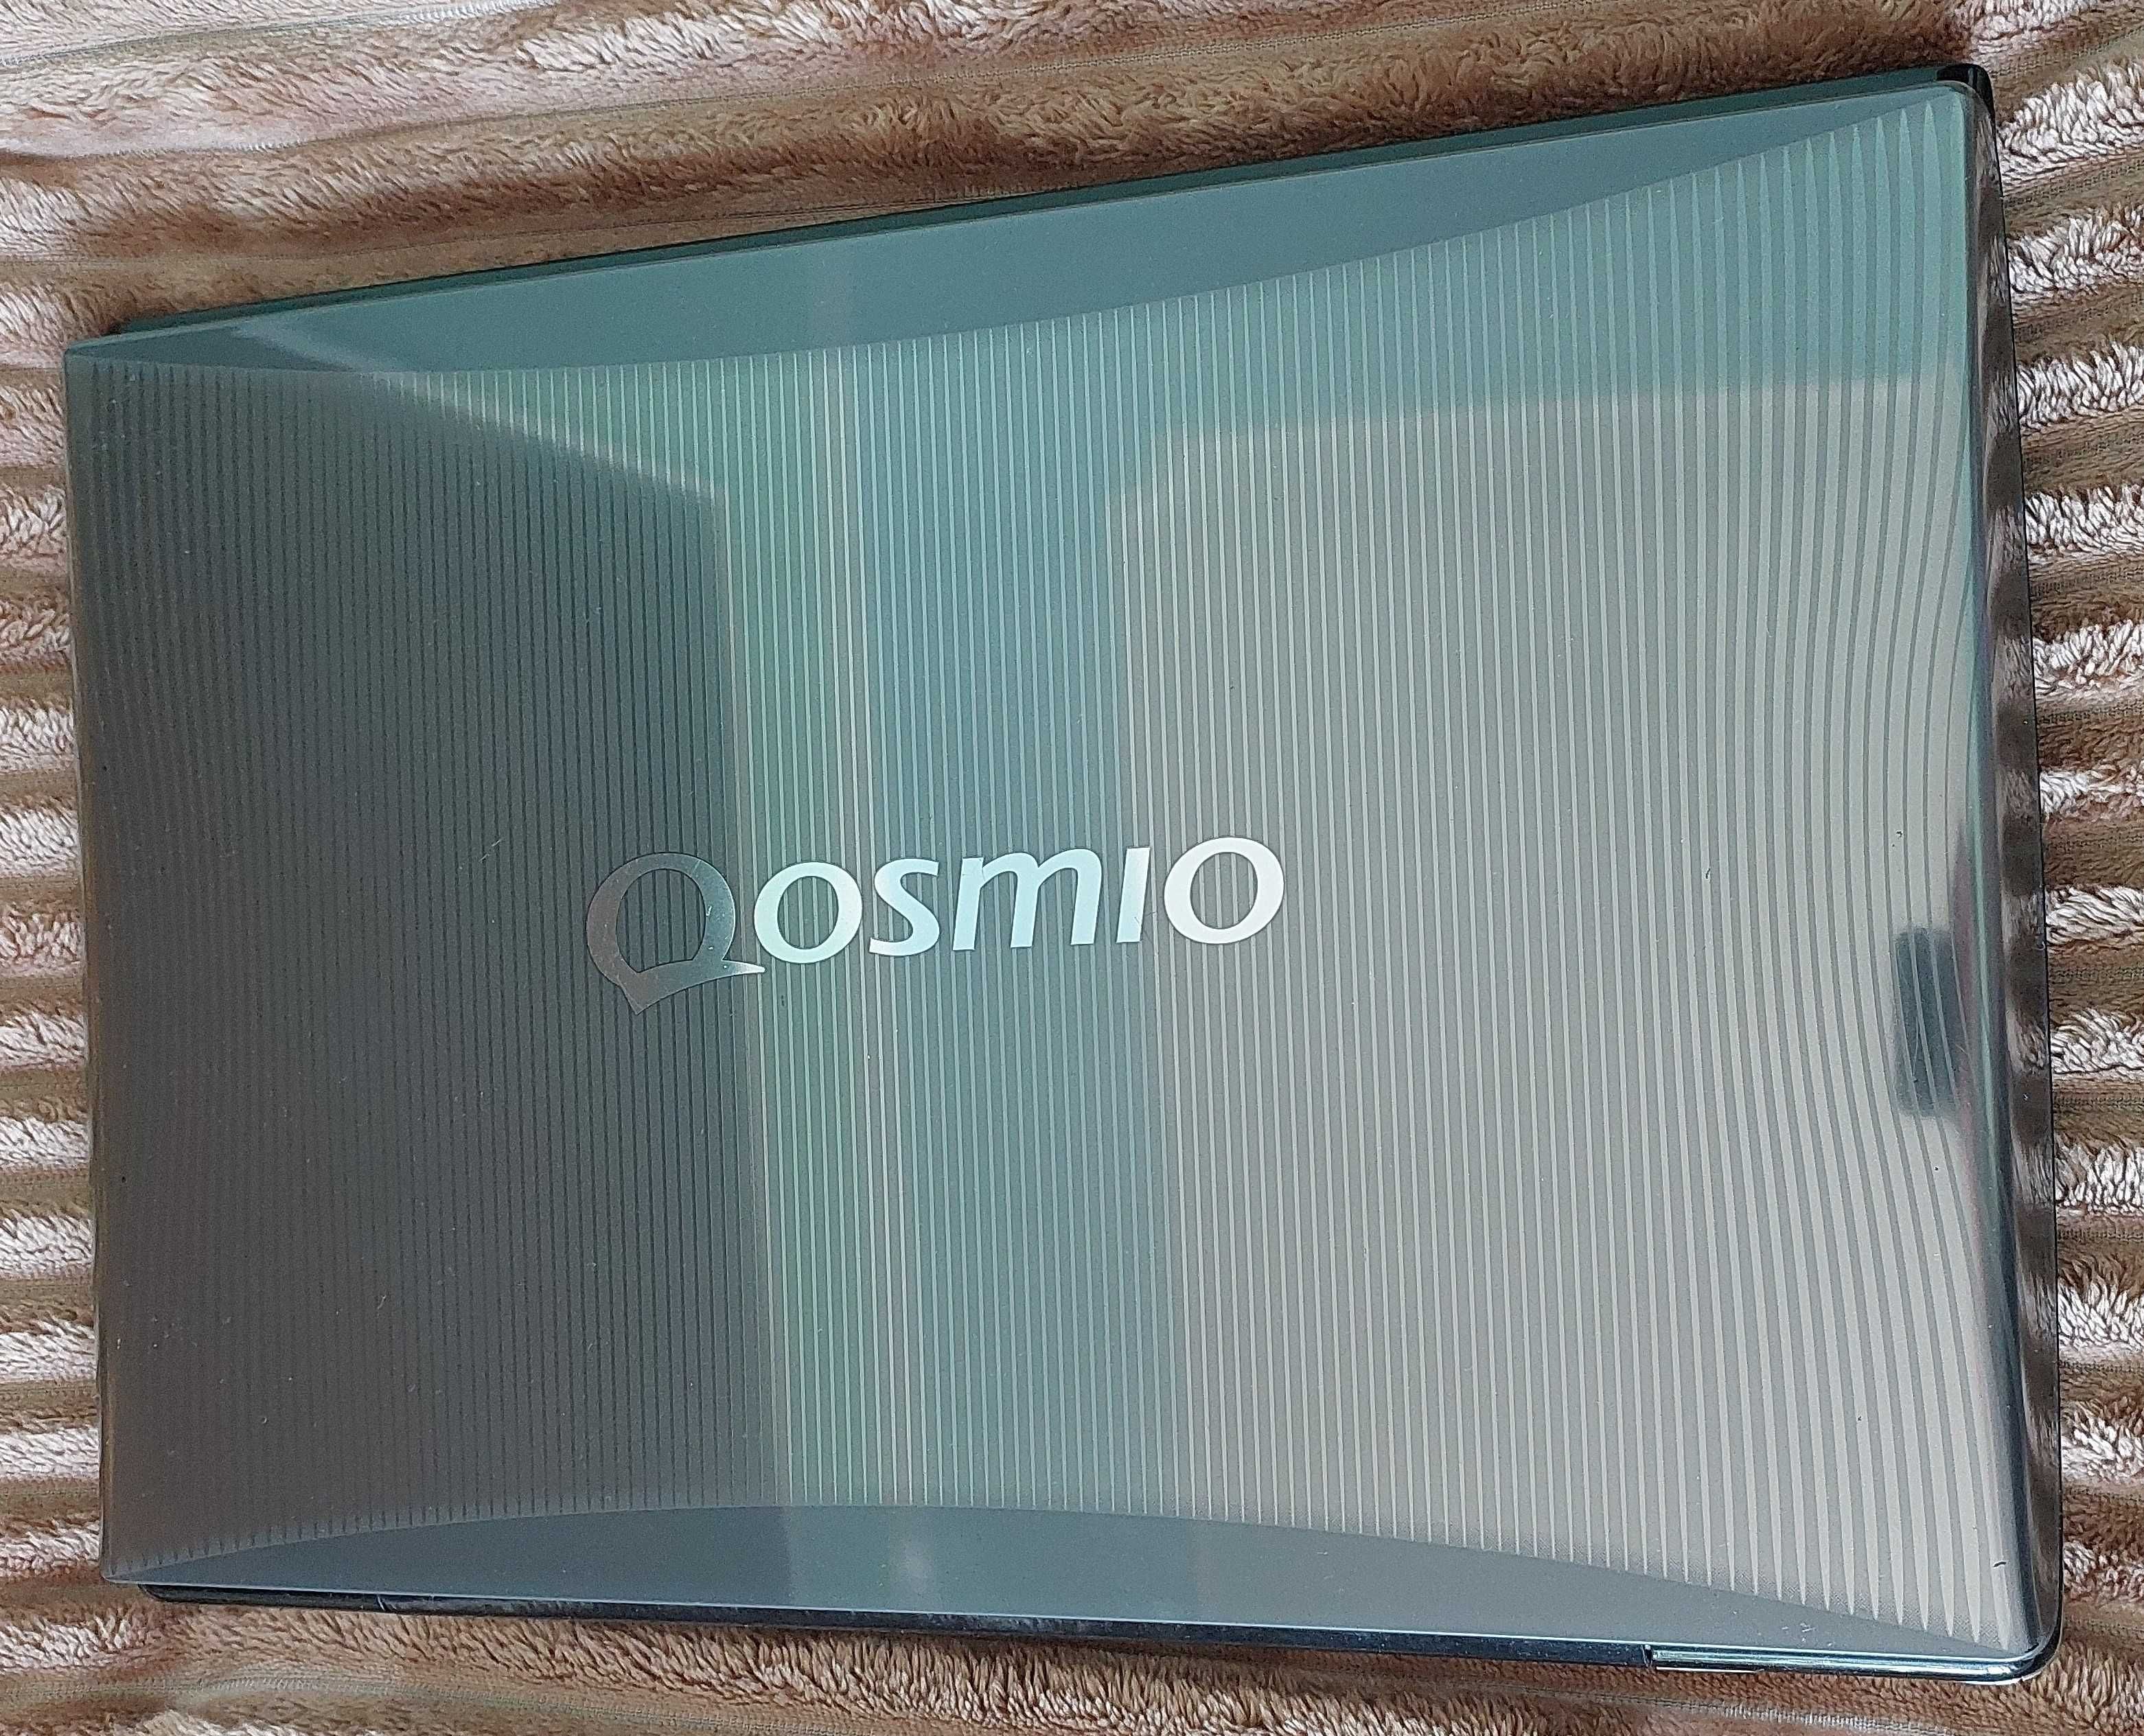 Ноутбук Toshiba Qosmio G55-Q804. Диагональ 18.4"